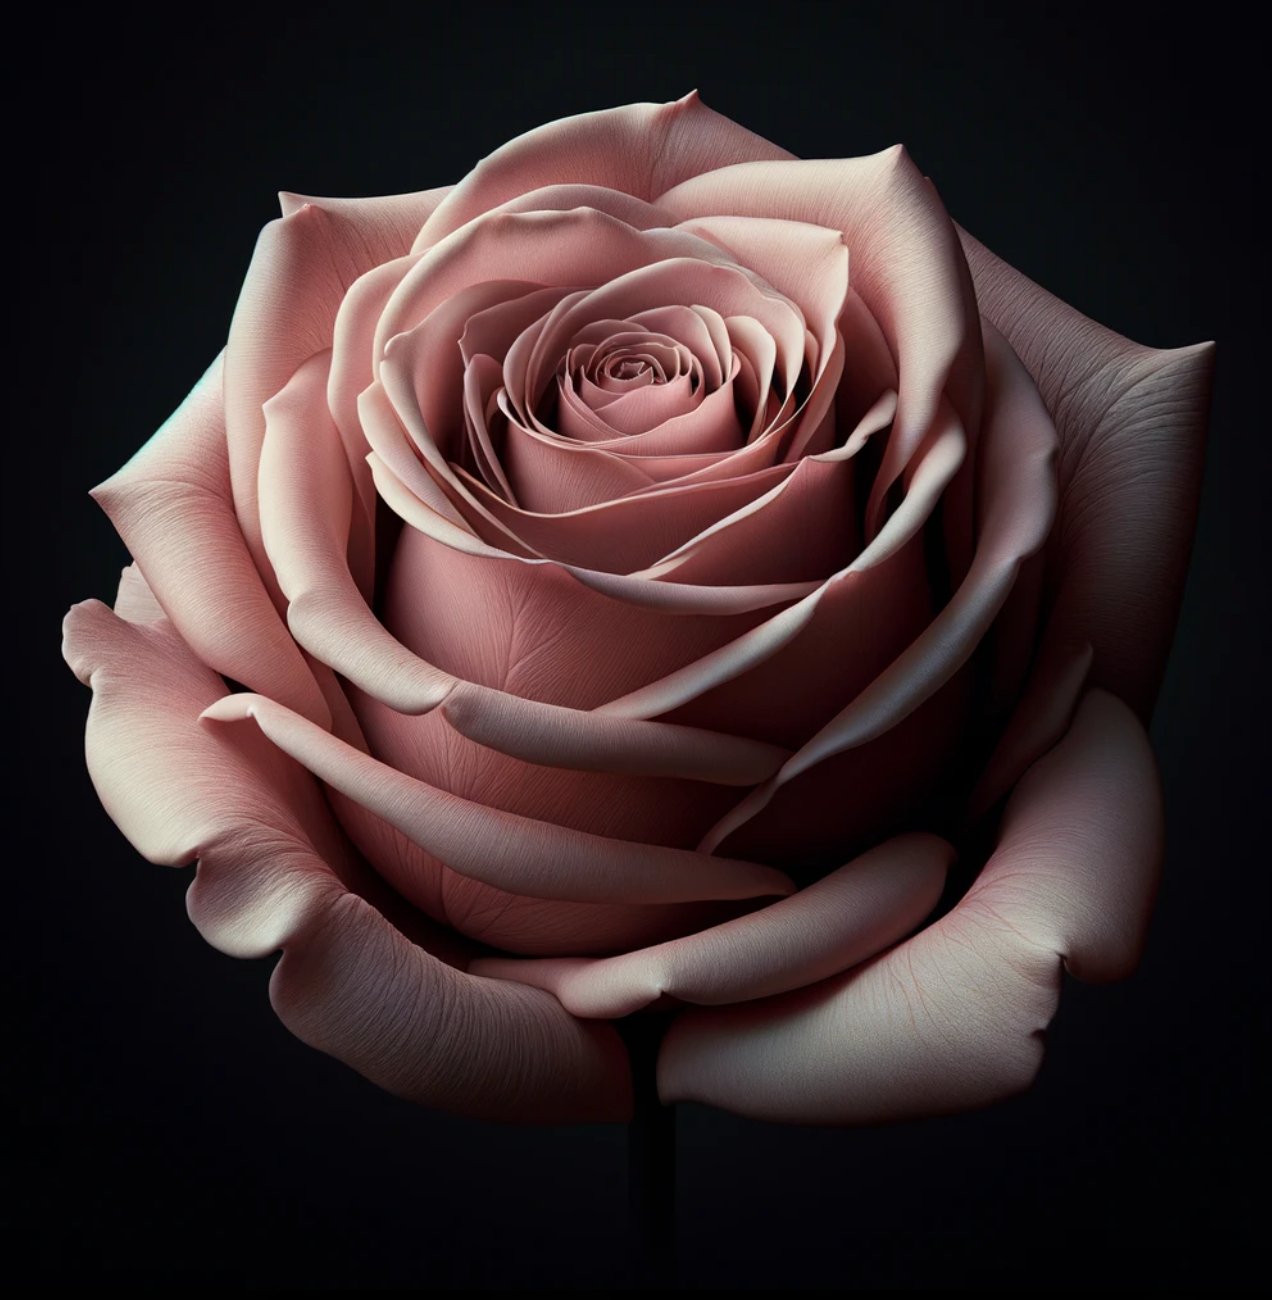 Dusty Rose Elegance - Imaginary Worlds